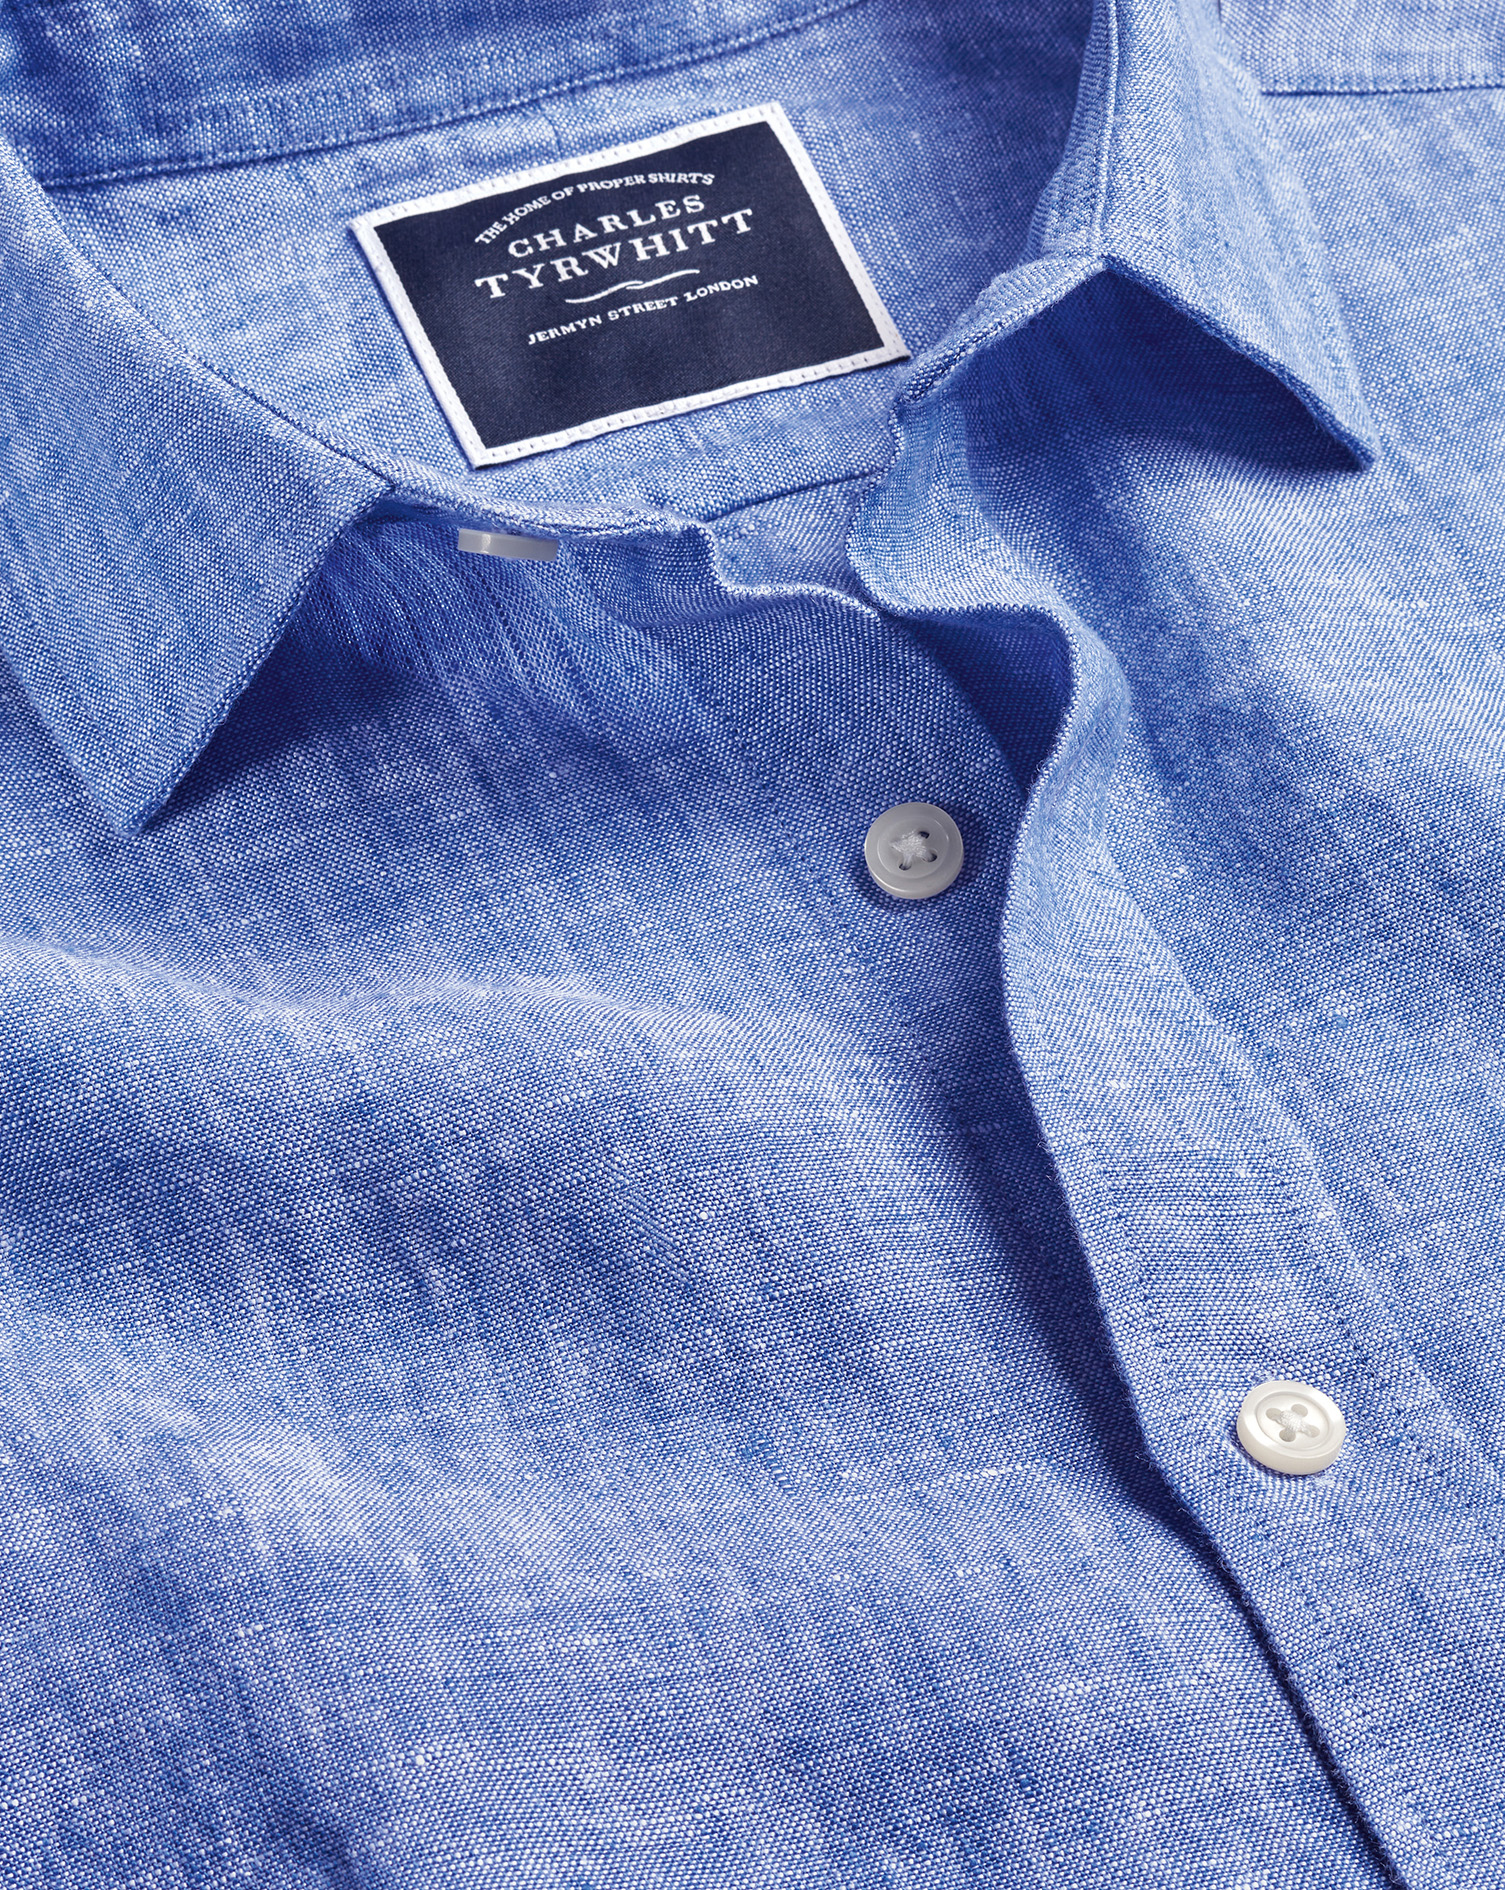 Men's Charles Tyrwhitt Pure Short Sleeve Casual Shirt - Cobalt Blue Single Cuff Size Medium Linen
